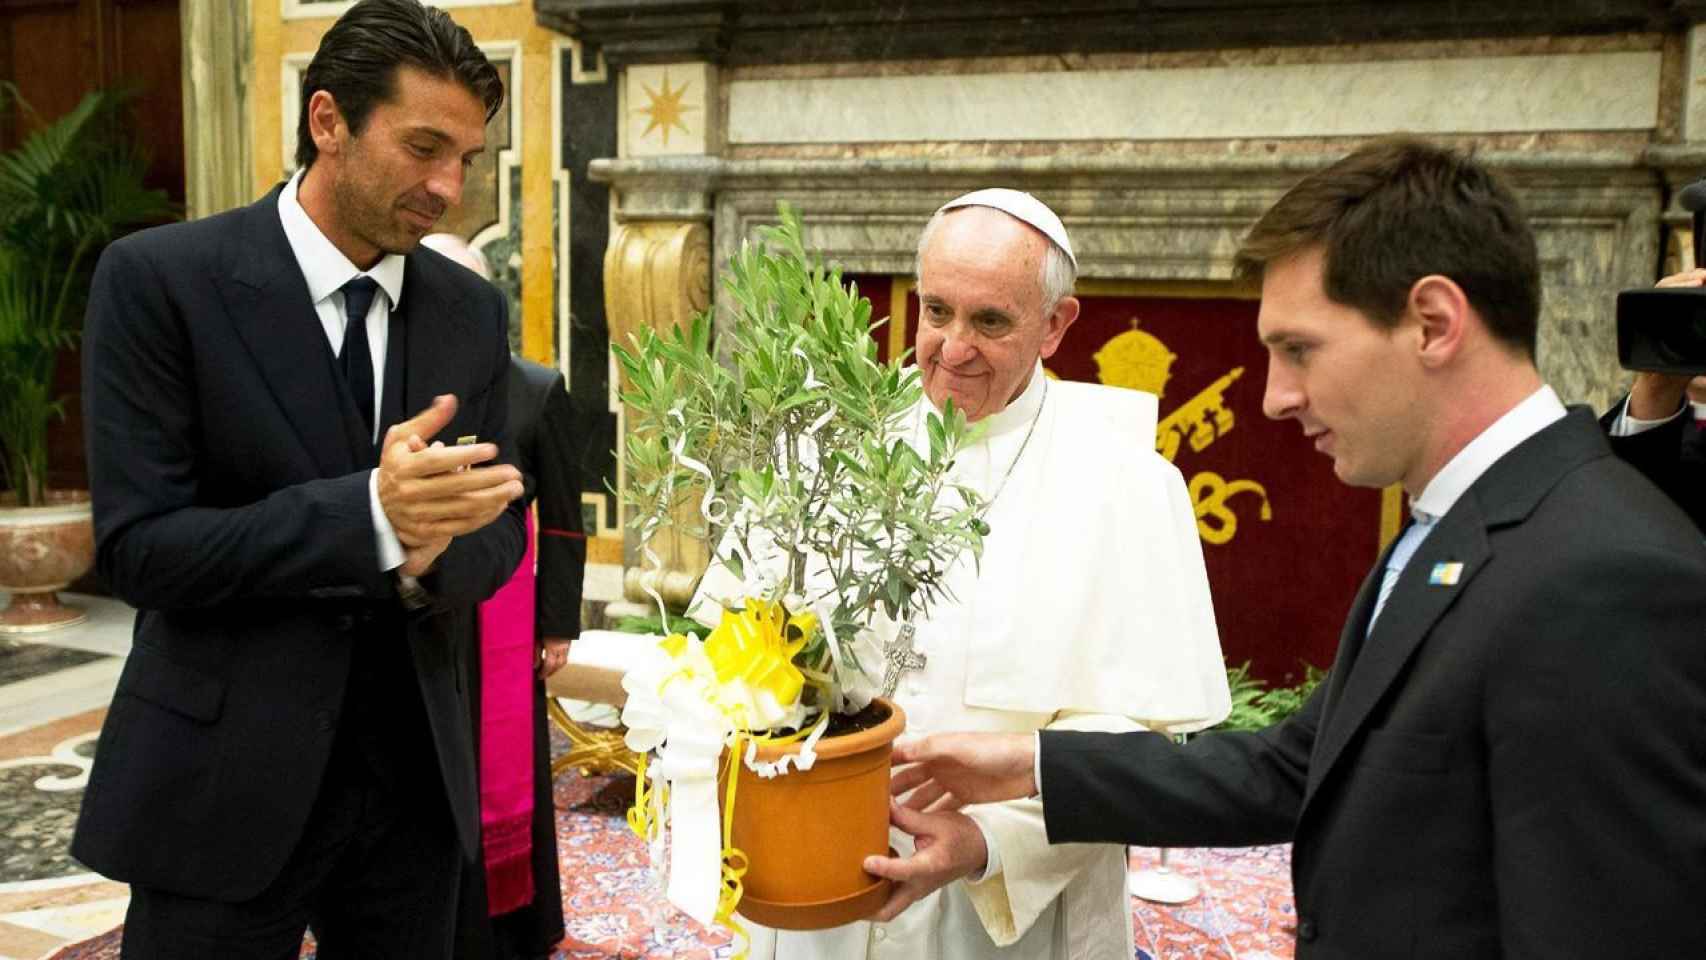 Los jugadores Buffon y Messi recibieron el olivo de la Paz bendecido por Su Santidad en 2013 / SCHOLAS